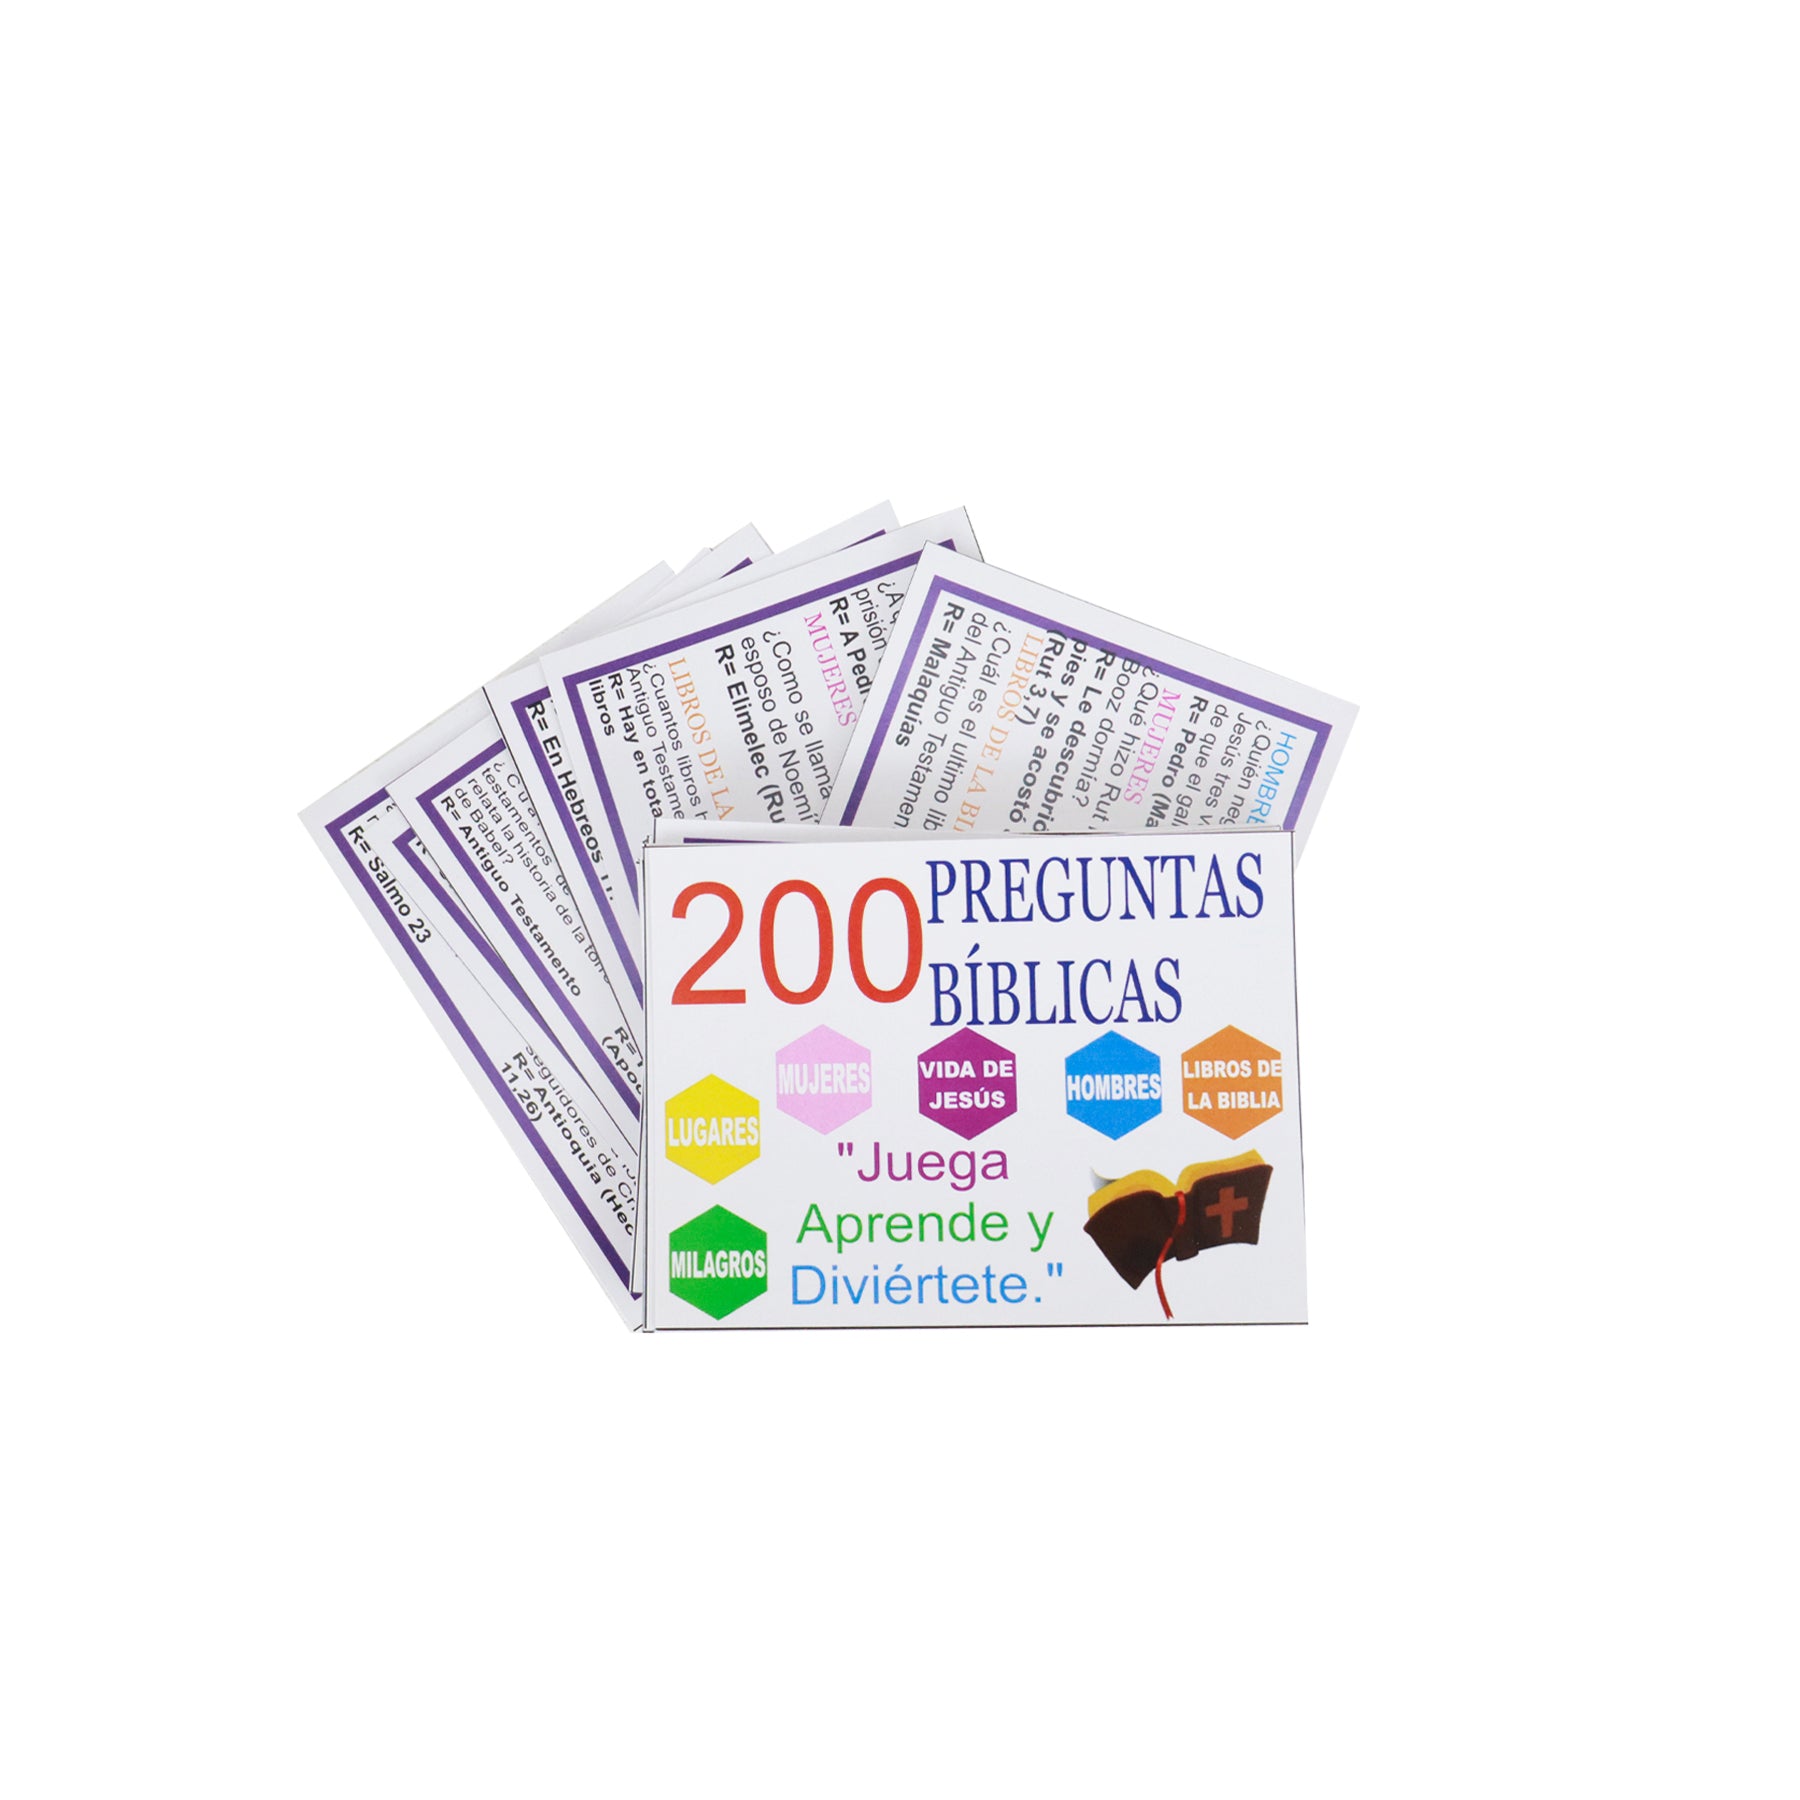 200 PREGUNTAS BIBLICAS "JUEGA APRENDE Y DIVIERTETE "